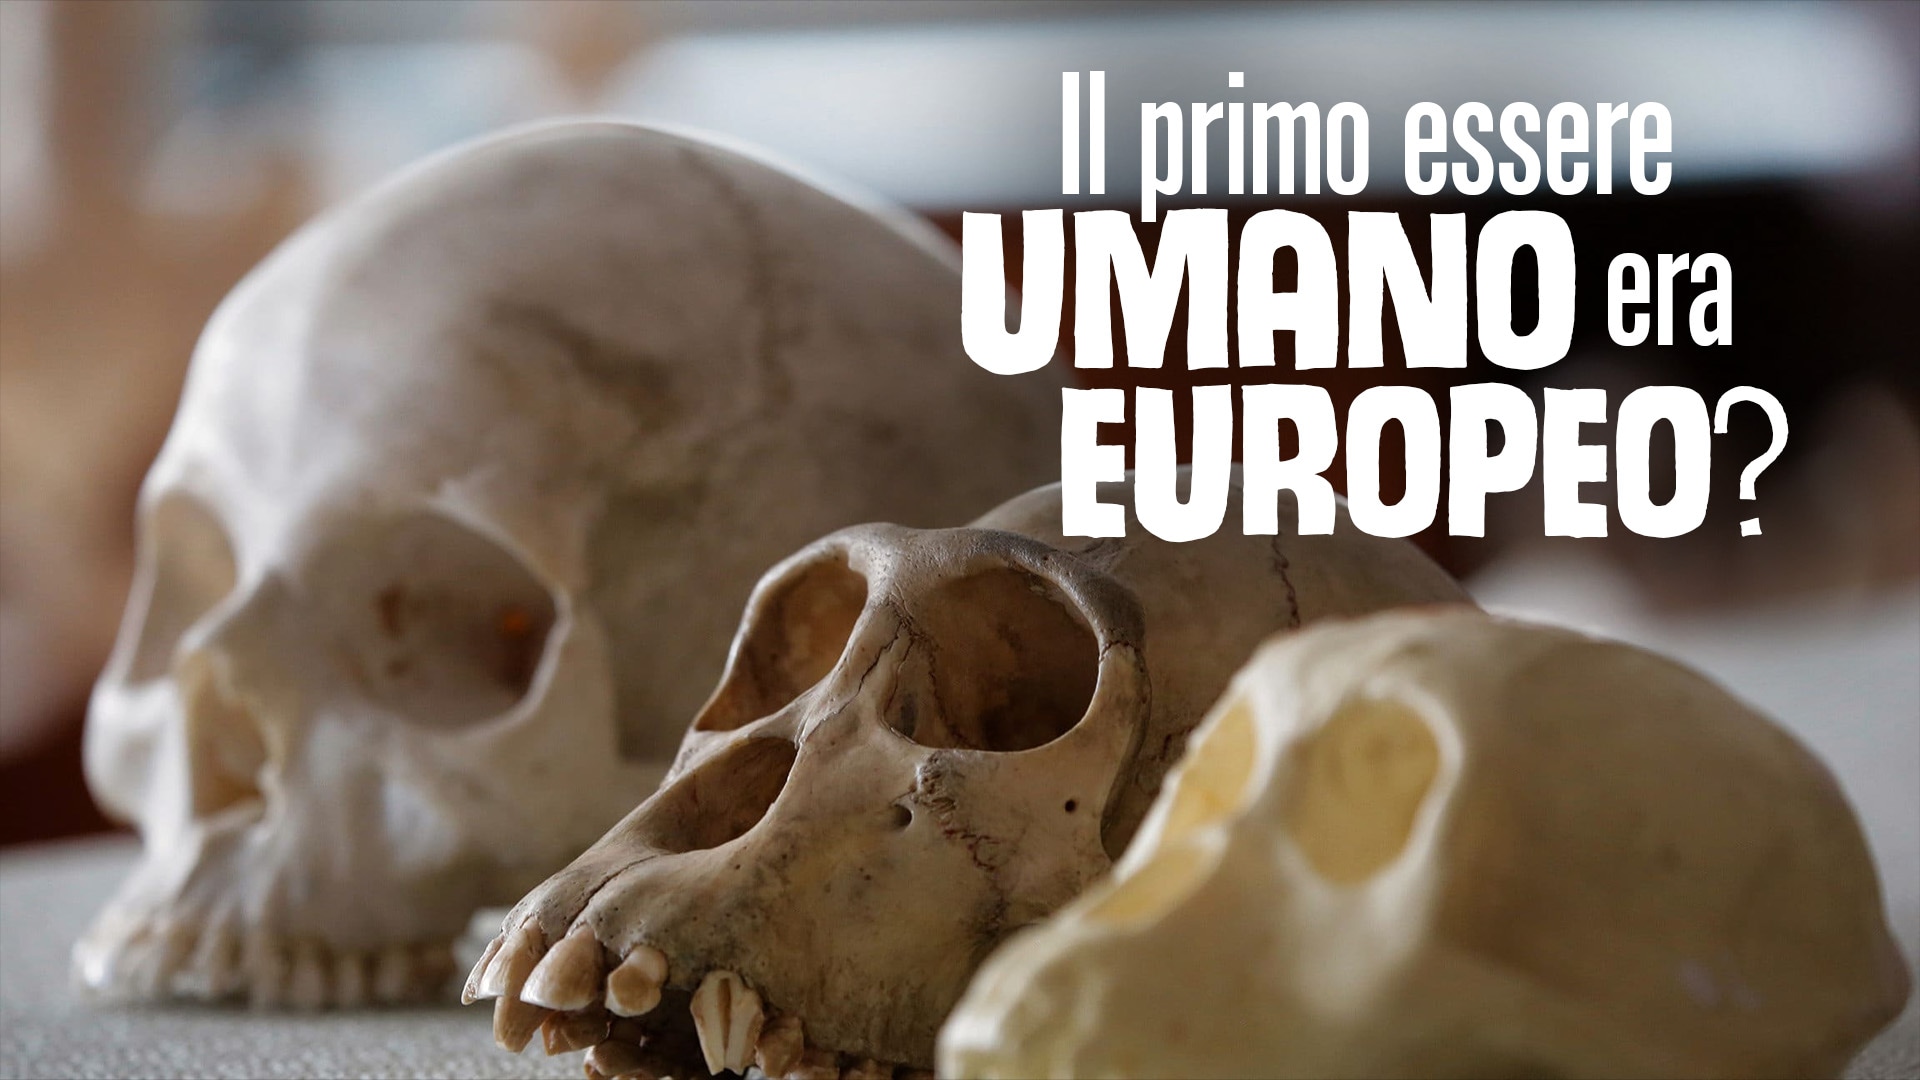 Il primo essere umano era europeo?